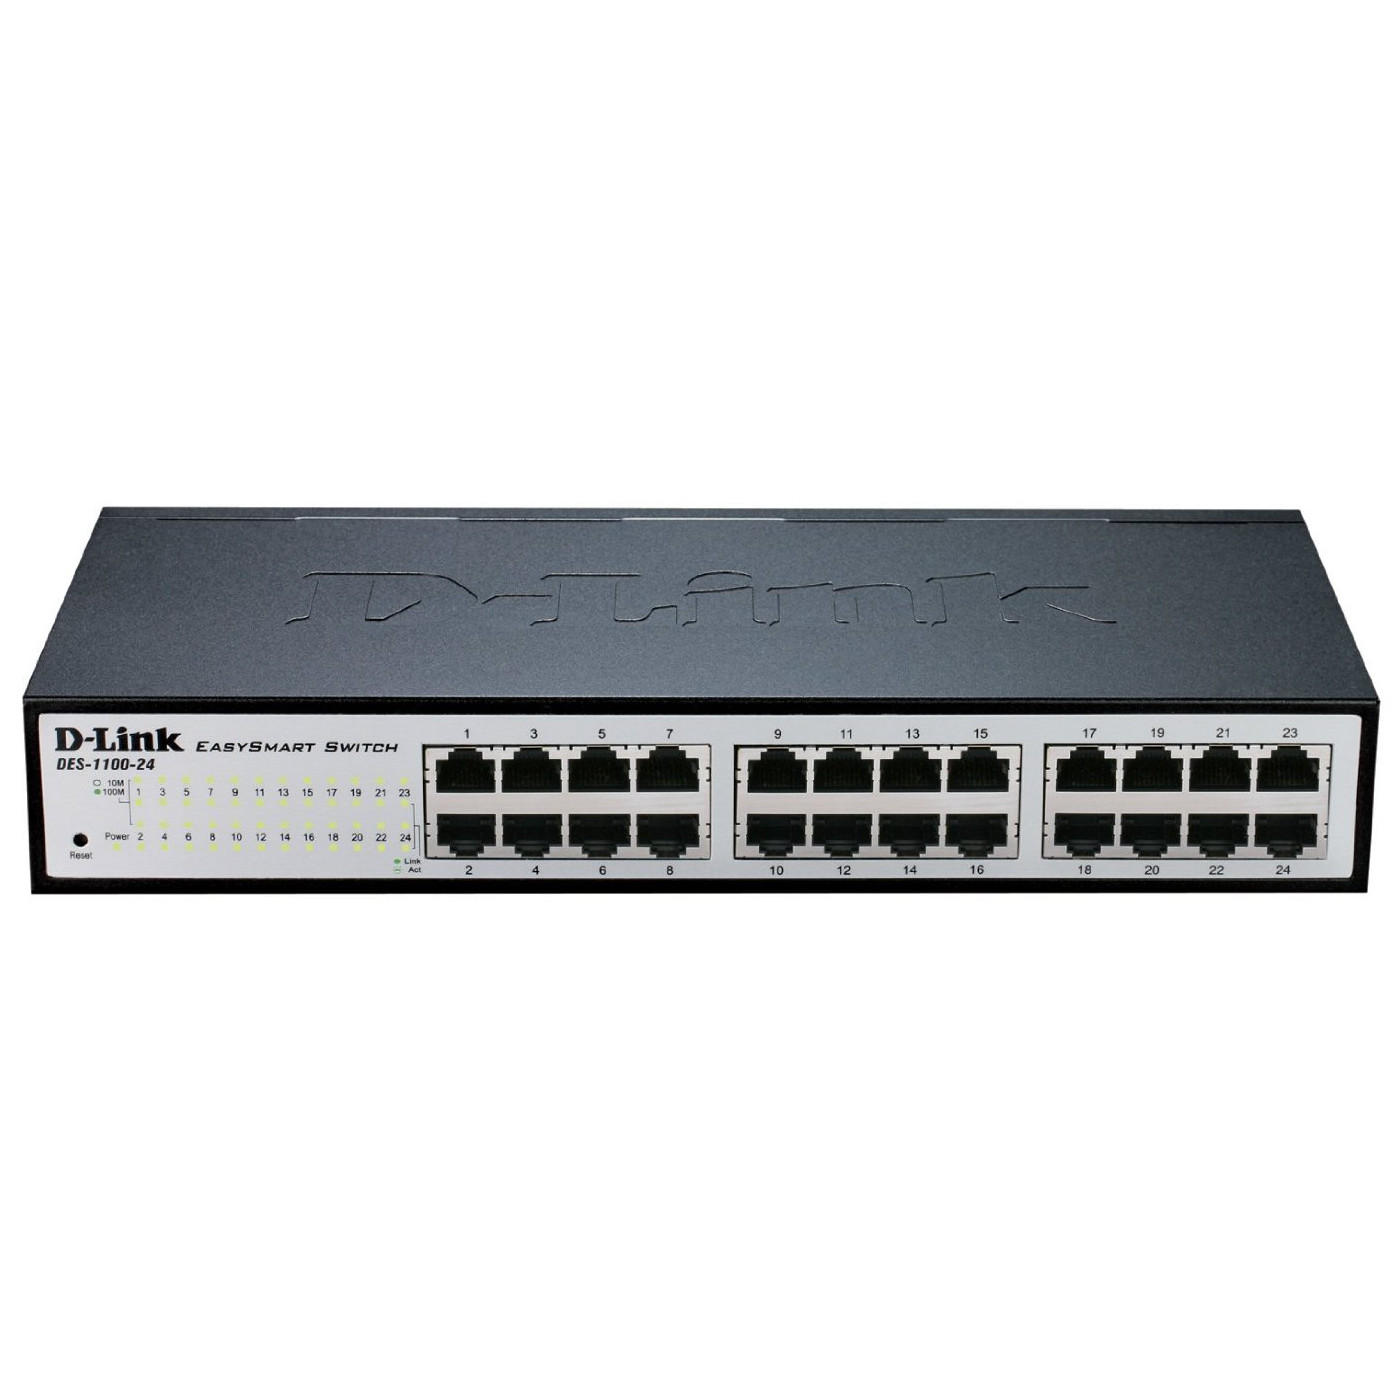  Switch D-Link DES-1100-24 